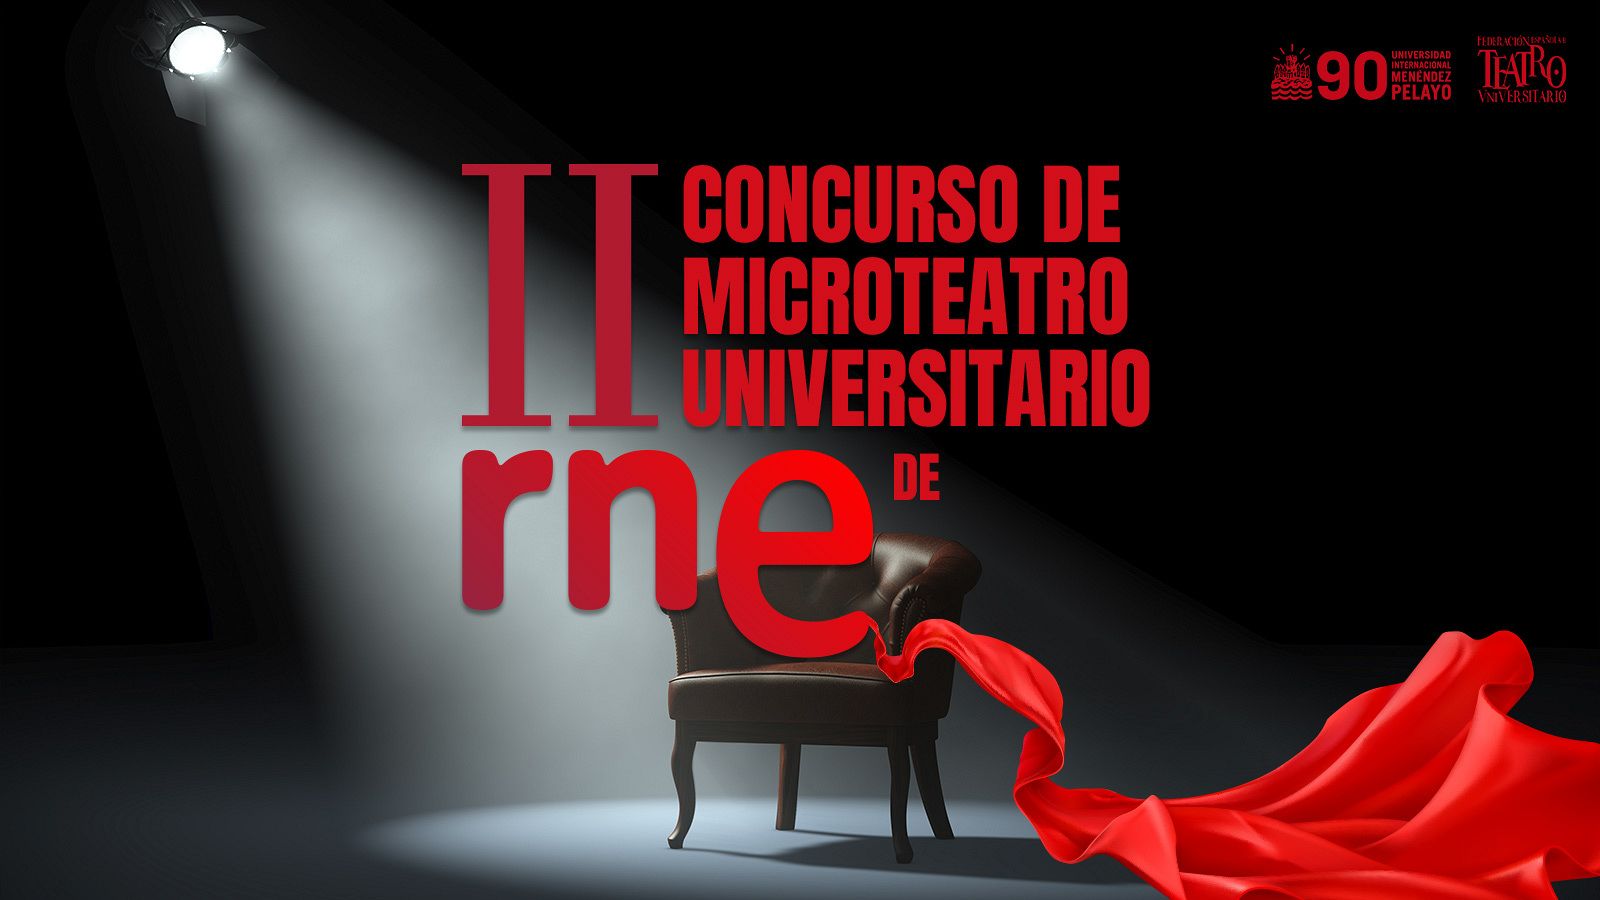 II Concurso de Microteatro Universitario de RNE.